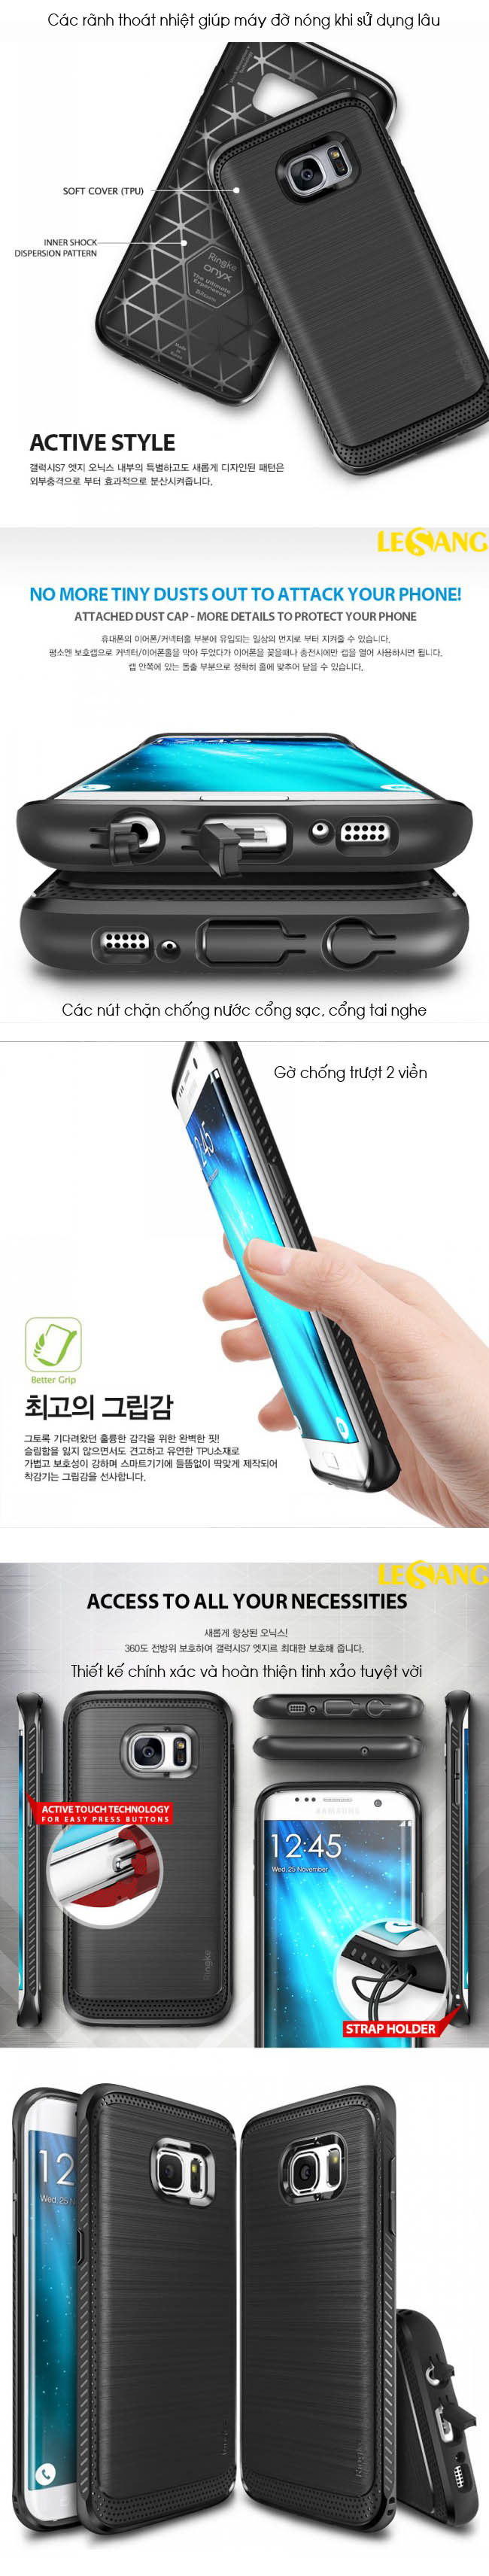 Ốp lưng Galaxy S7 Edge Ringke Onyx chống sốc (USA) 33